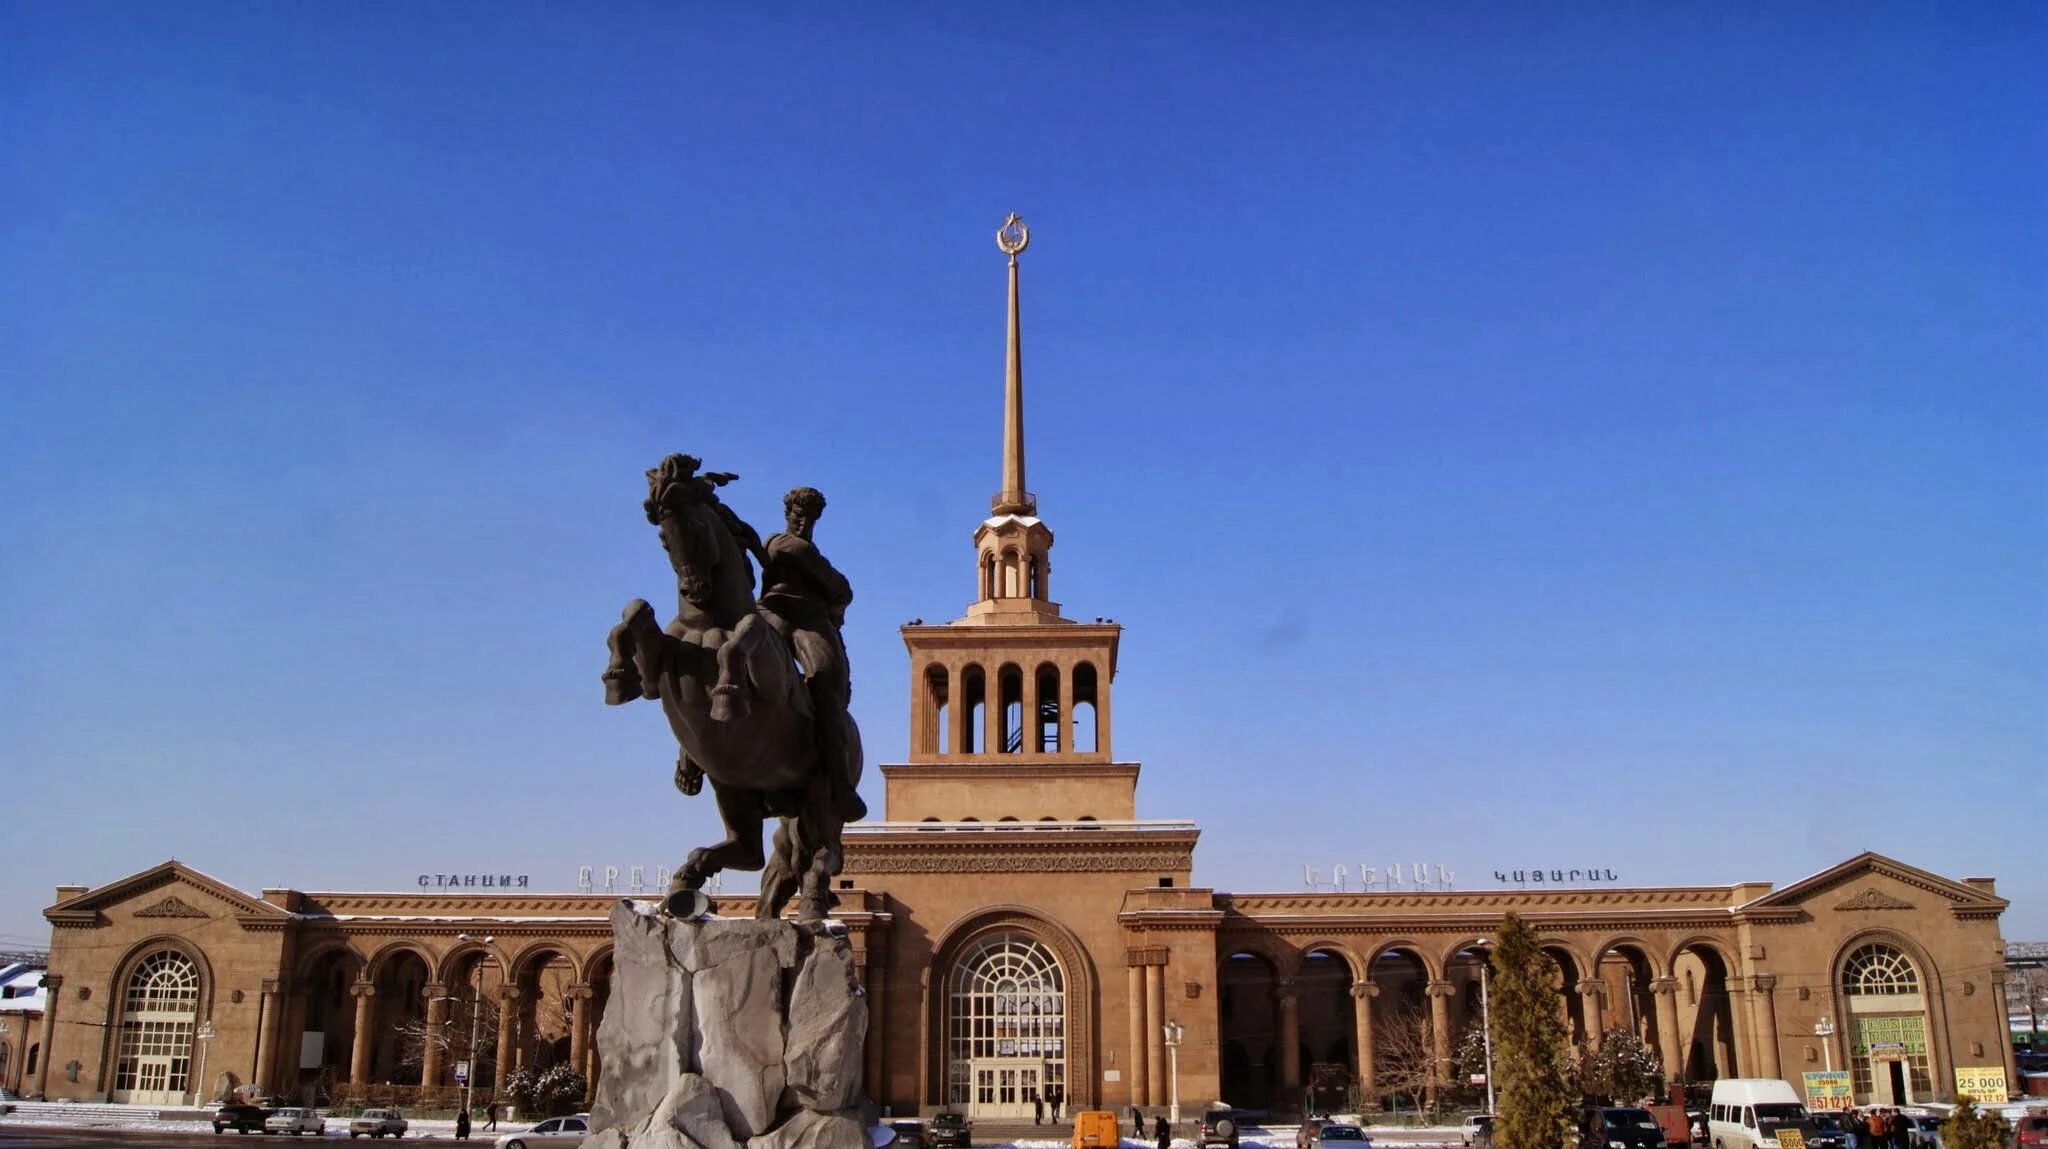 Ереван вокзал. Железнодорожный вокзал Ереван. ЖД станция Ереван. ЖД вокзал Ереван.